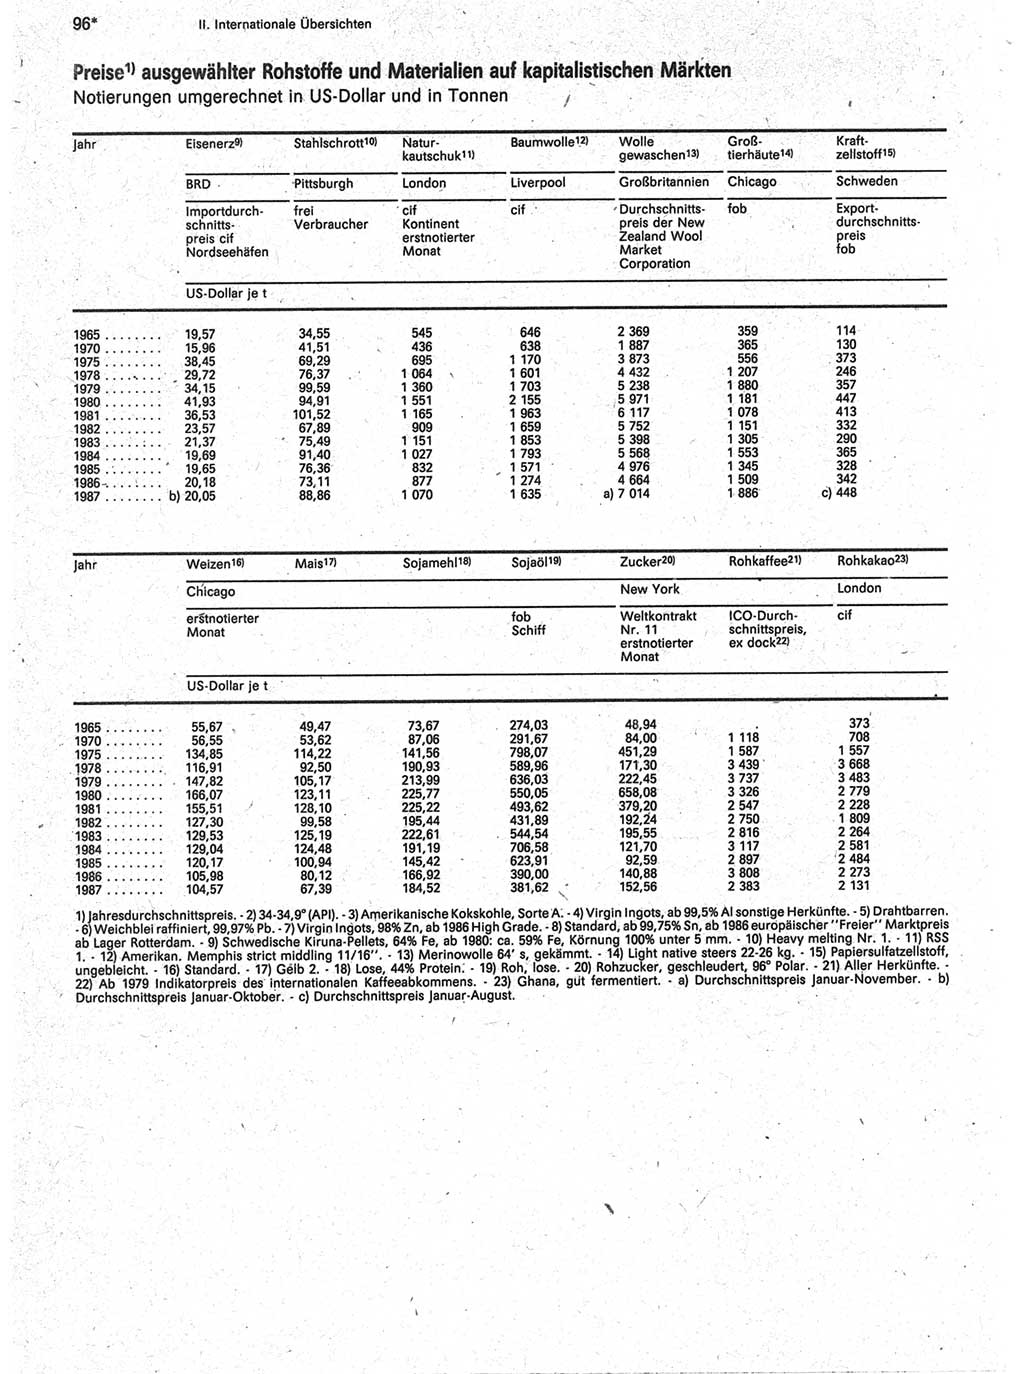 Statistisches Jahrbuch der Deutschen Demokratischen Republik (DDR) 1988, Seite 96 (Stat. Jb. DDR 1988, S. 96)